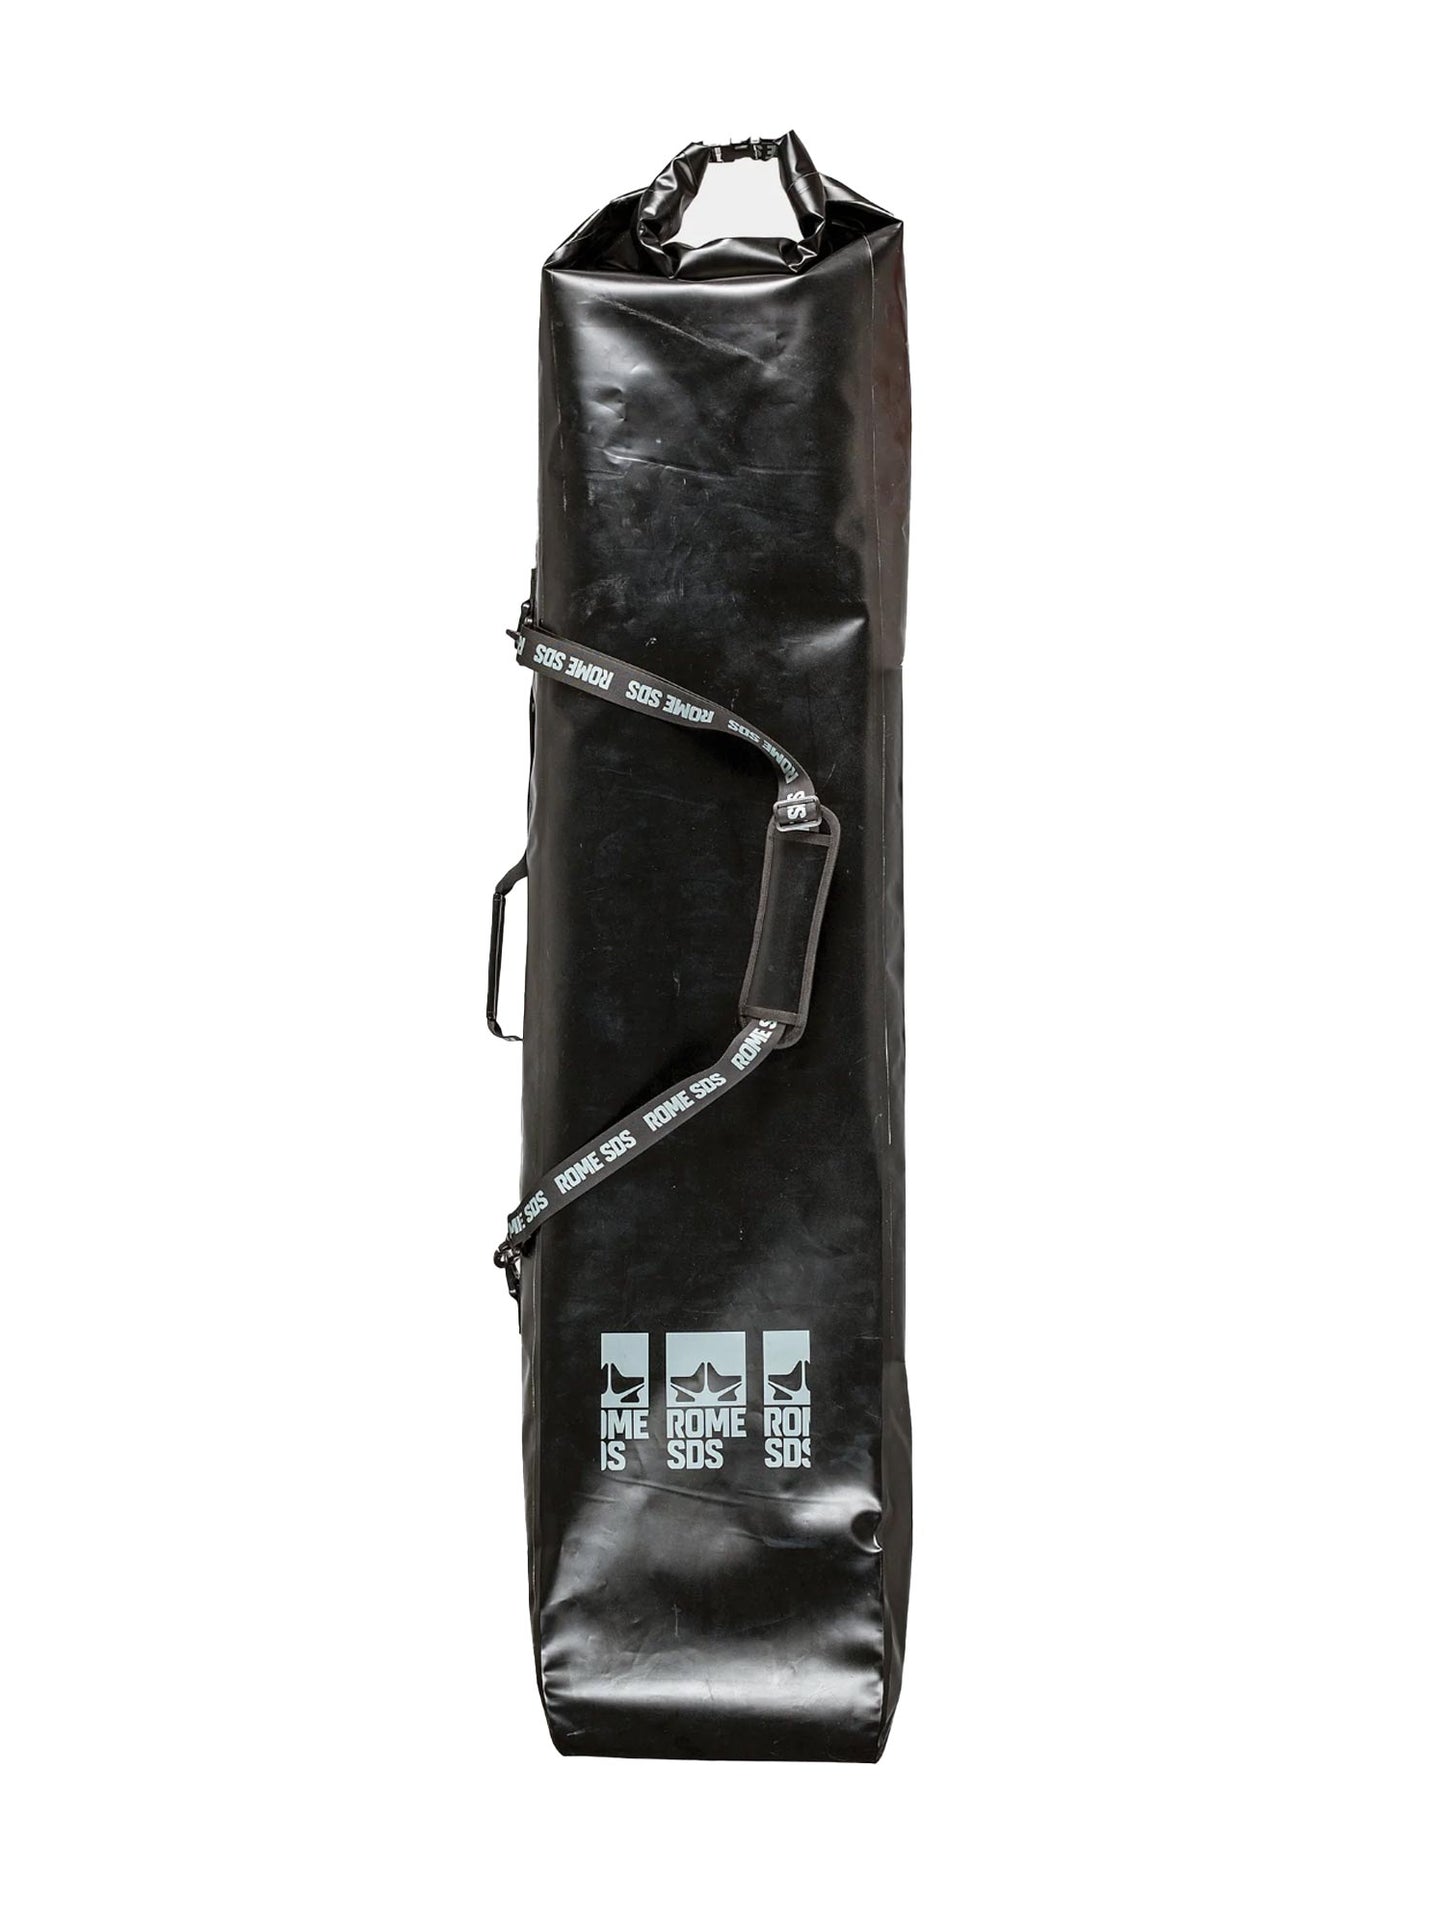 Rome Dodger snowboard bag, black